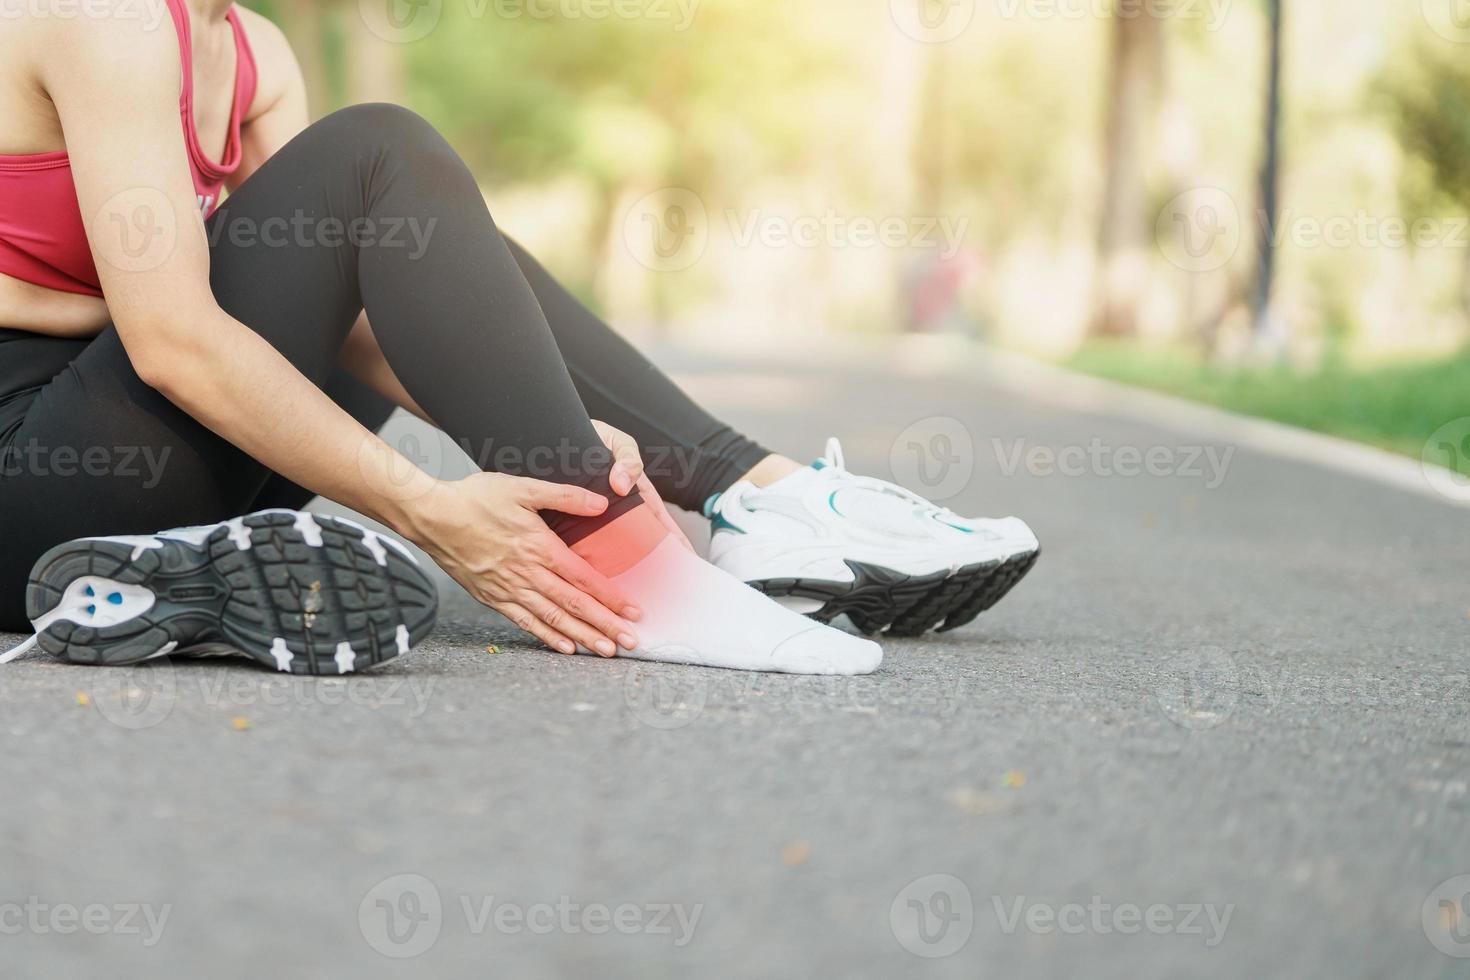 jong volwassen vrouw met zijn spier pijn gedurende rennen. loper vrouw hebben been pijn ten gevolge naar enkel verstuikingen of Achilles peesontsteking. sport- verwondingen en medisch concept foto